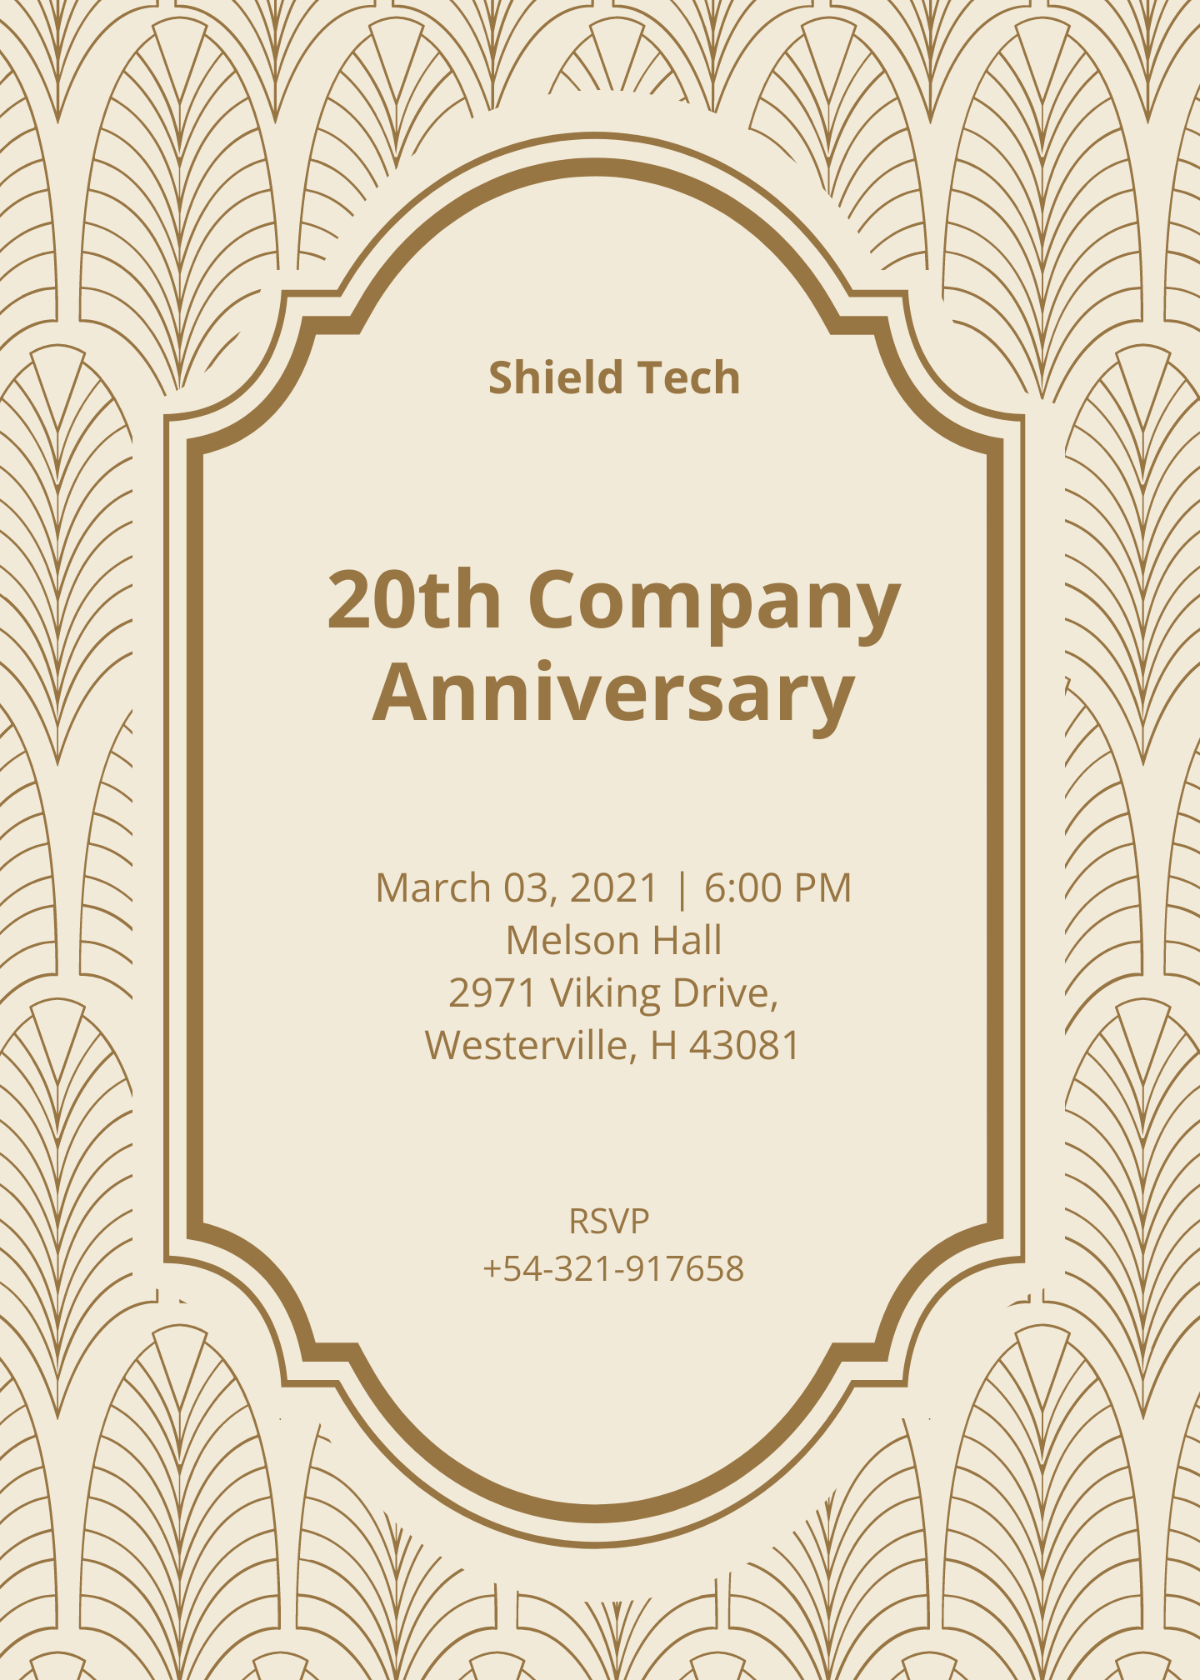 Company Anniversary Invitation Template